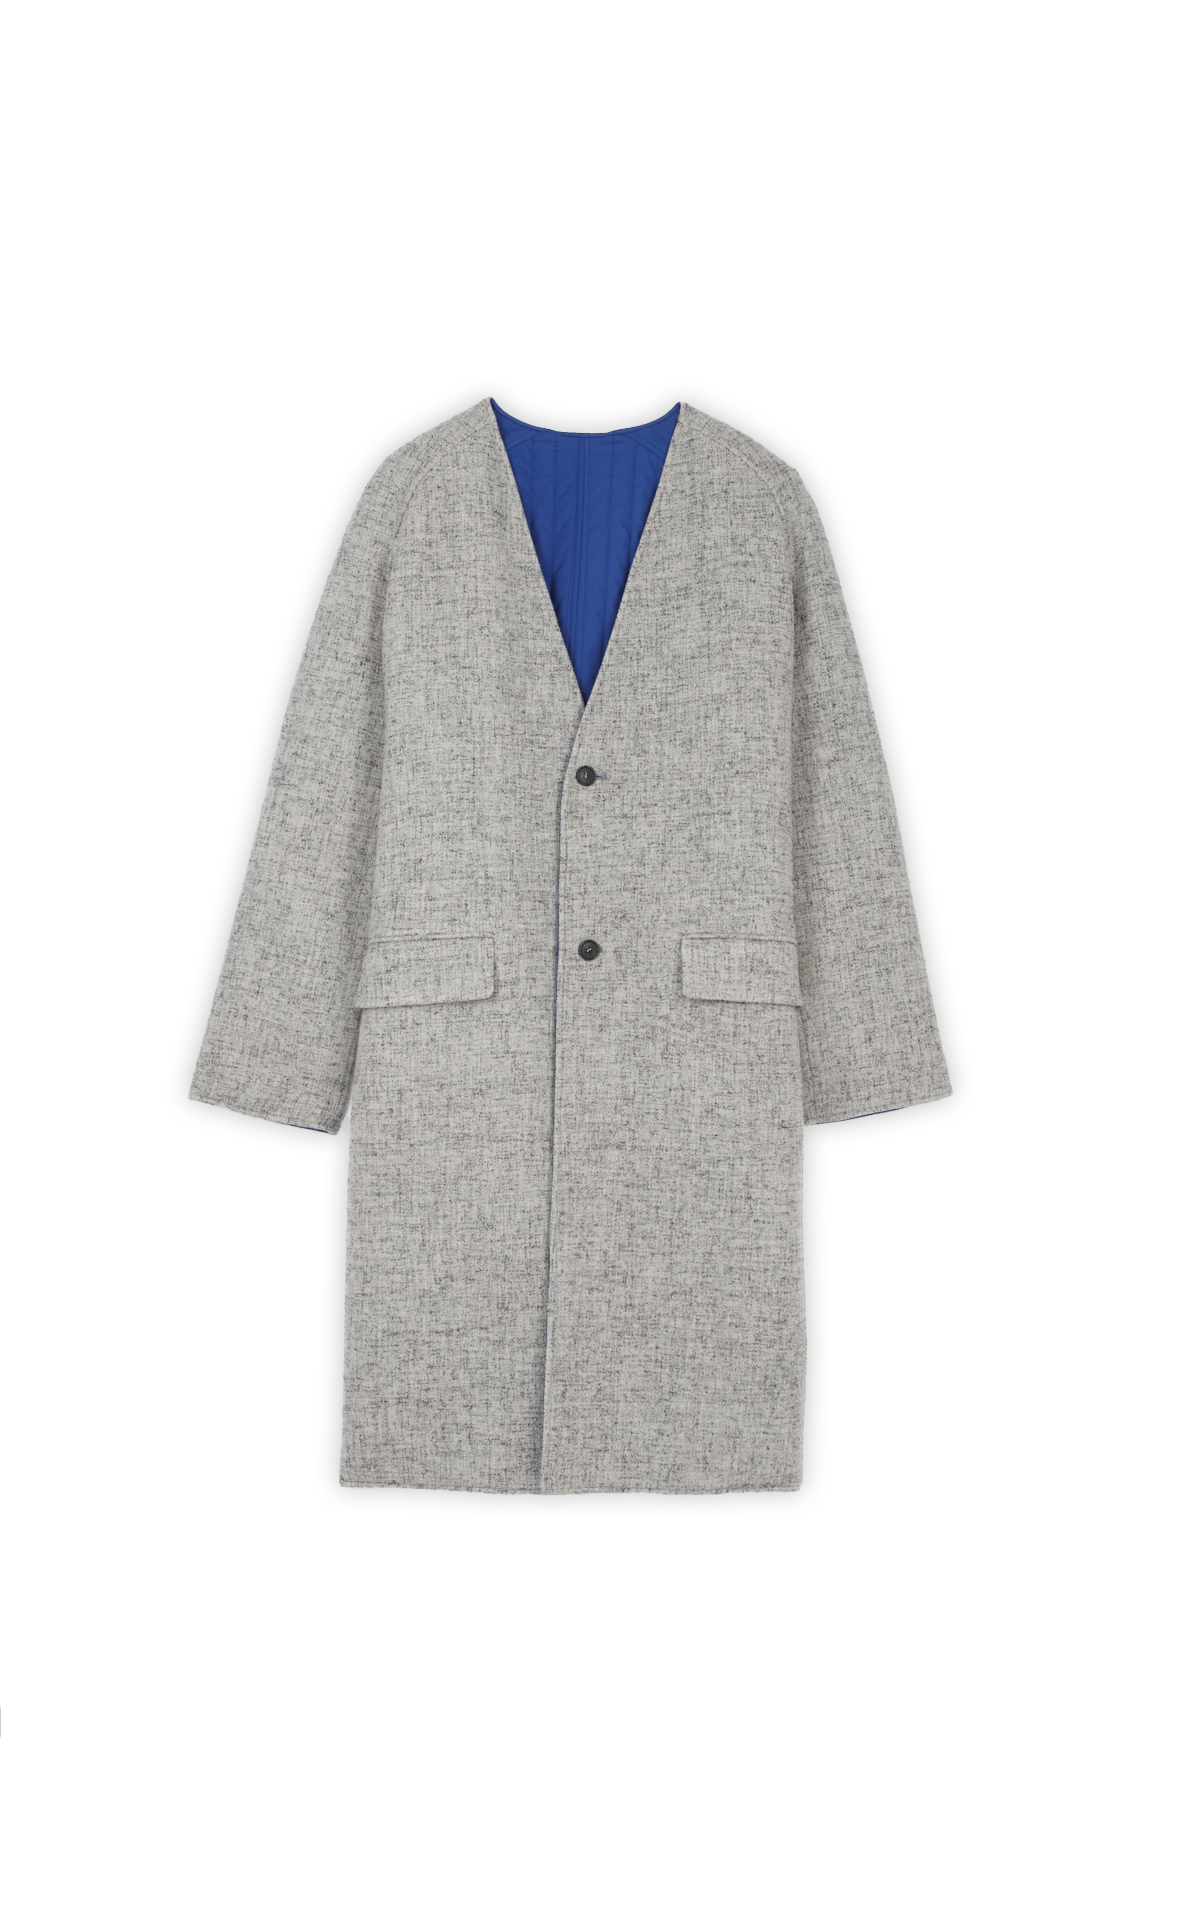 Long reversible grey/blue coat